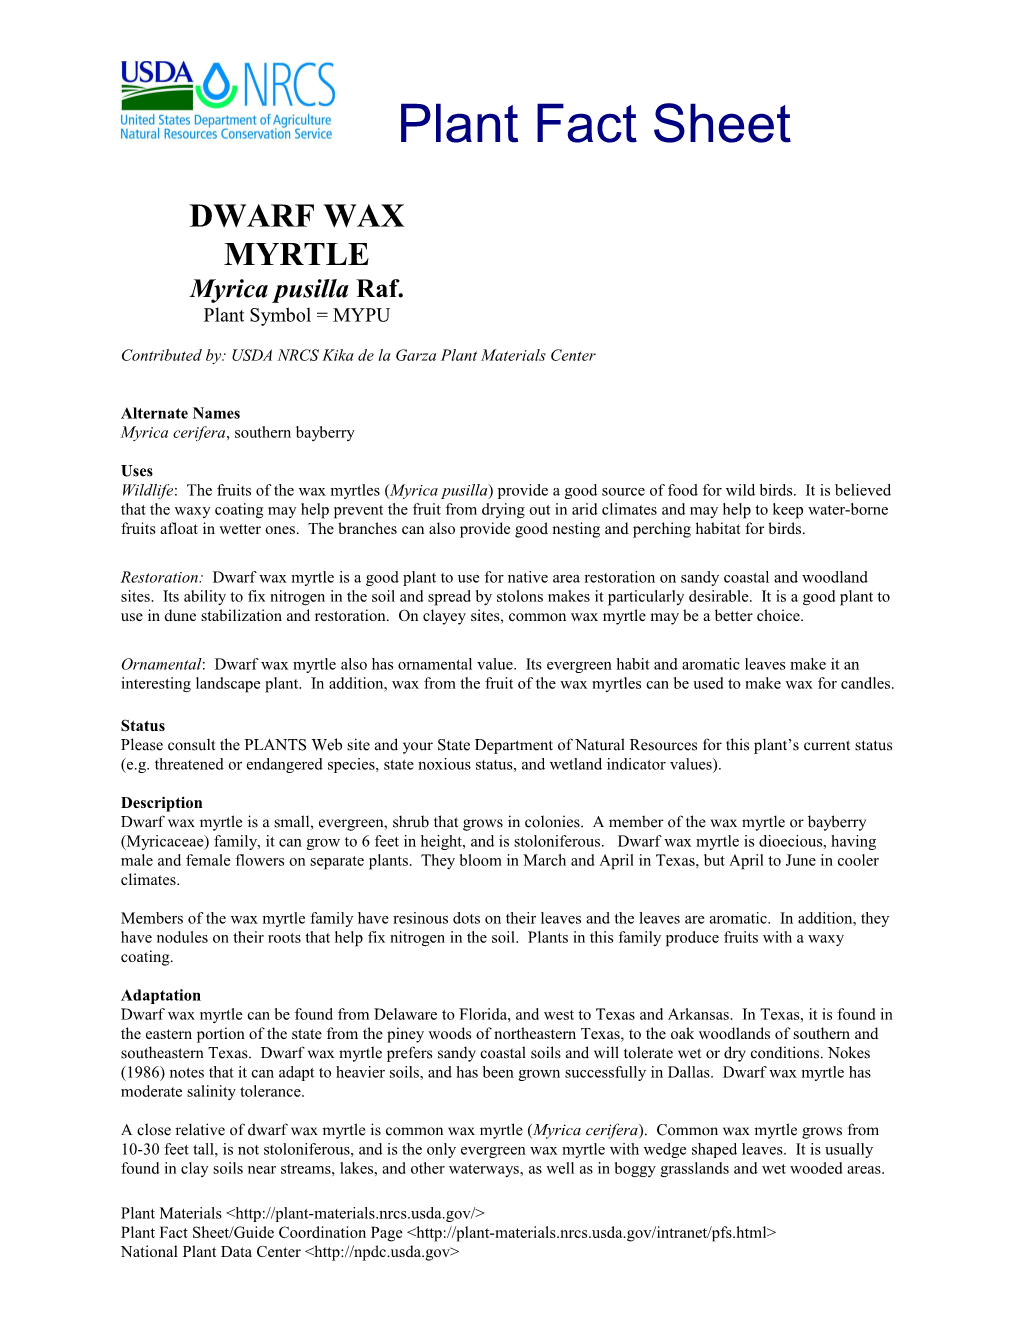 Dwarf Wax Myrtle